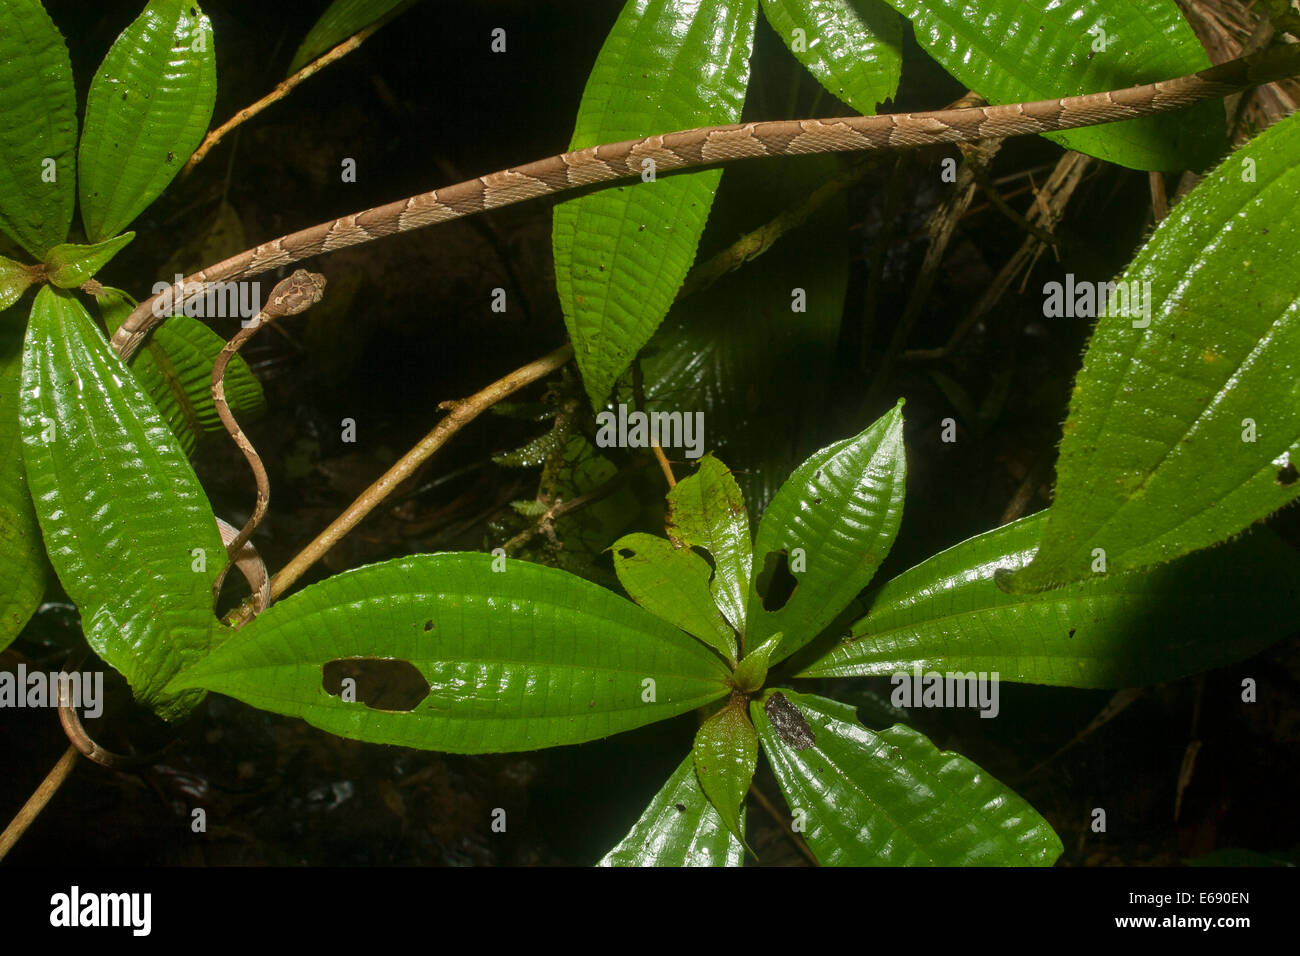 Vista superior de un extremadamente delgadas puntas romas tree snake (Imantodes cenchoa). Fotografiado en Costa Rica. Foto de stock